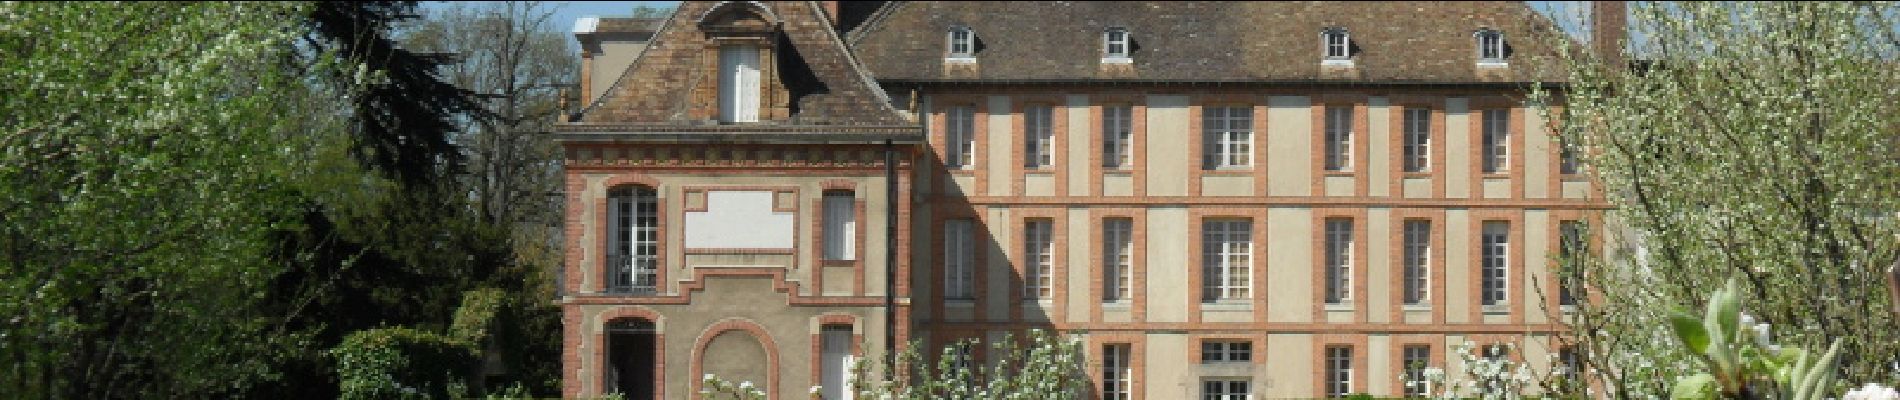 Point d'intérêt Magny-les-Hameaux - Musée national des Granges de Port-Royal - Photo